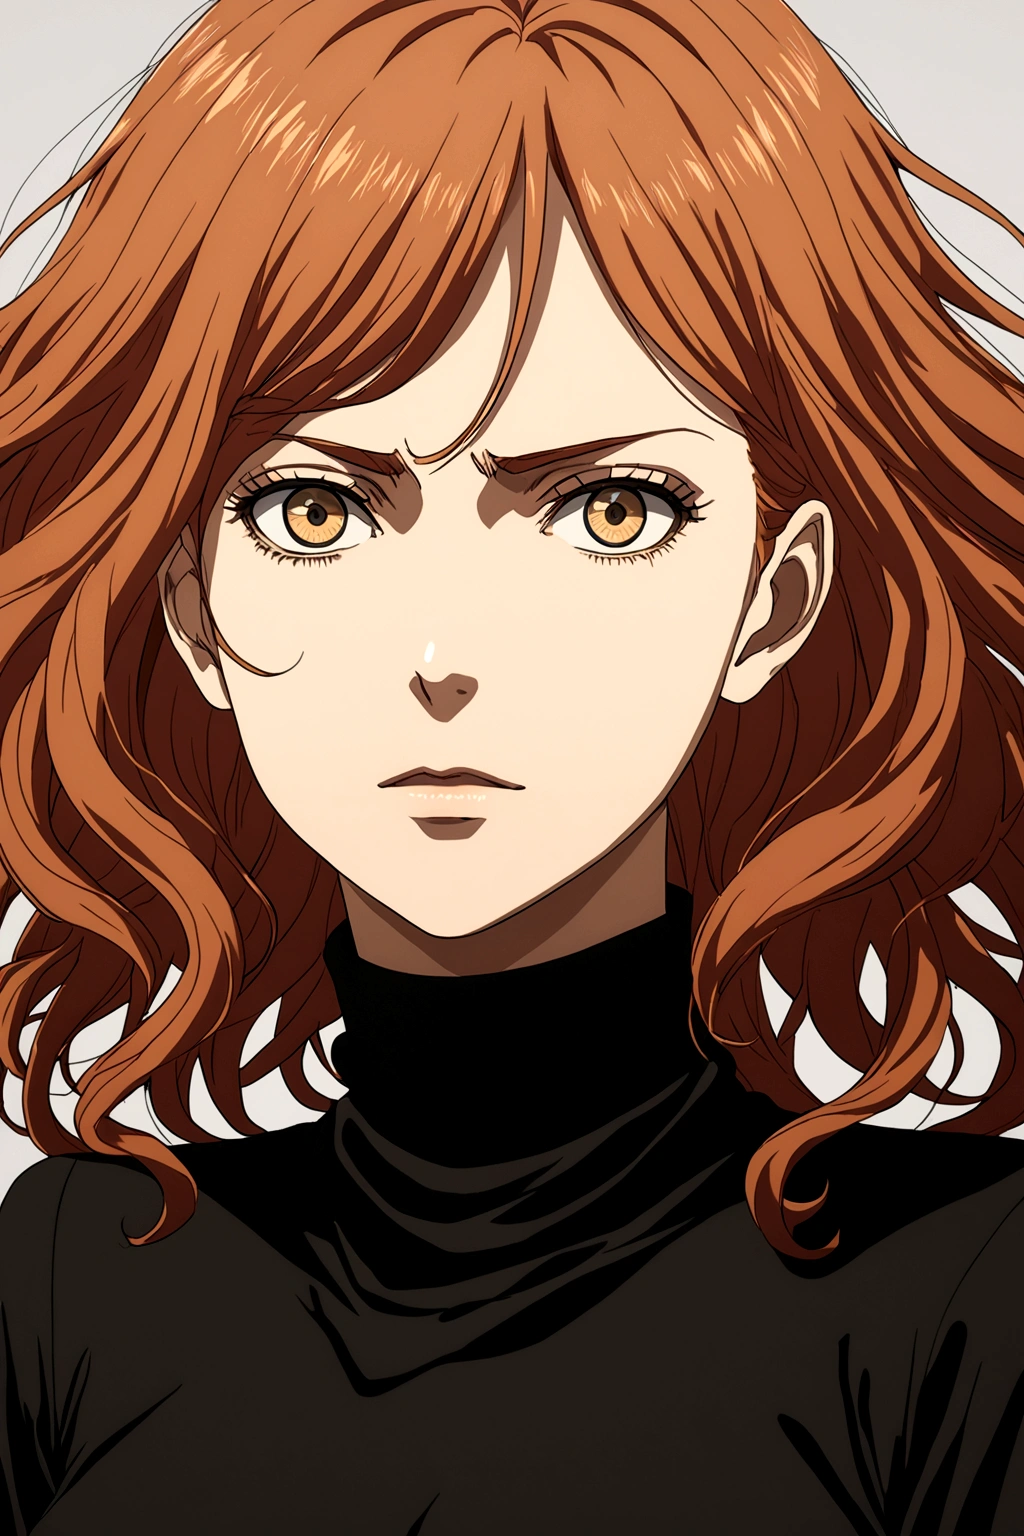 Angriff auf Titan im Anime-Stil, Frau mit gewelltem rotem Haar. Sie trägt eine schwarze hochgeschlossene Bluse